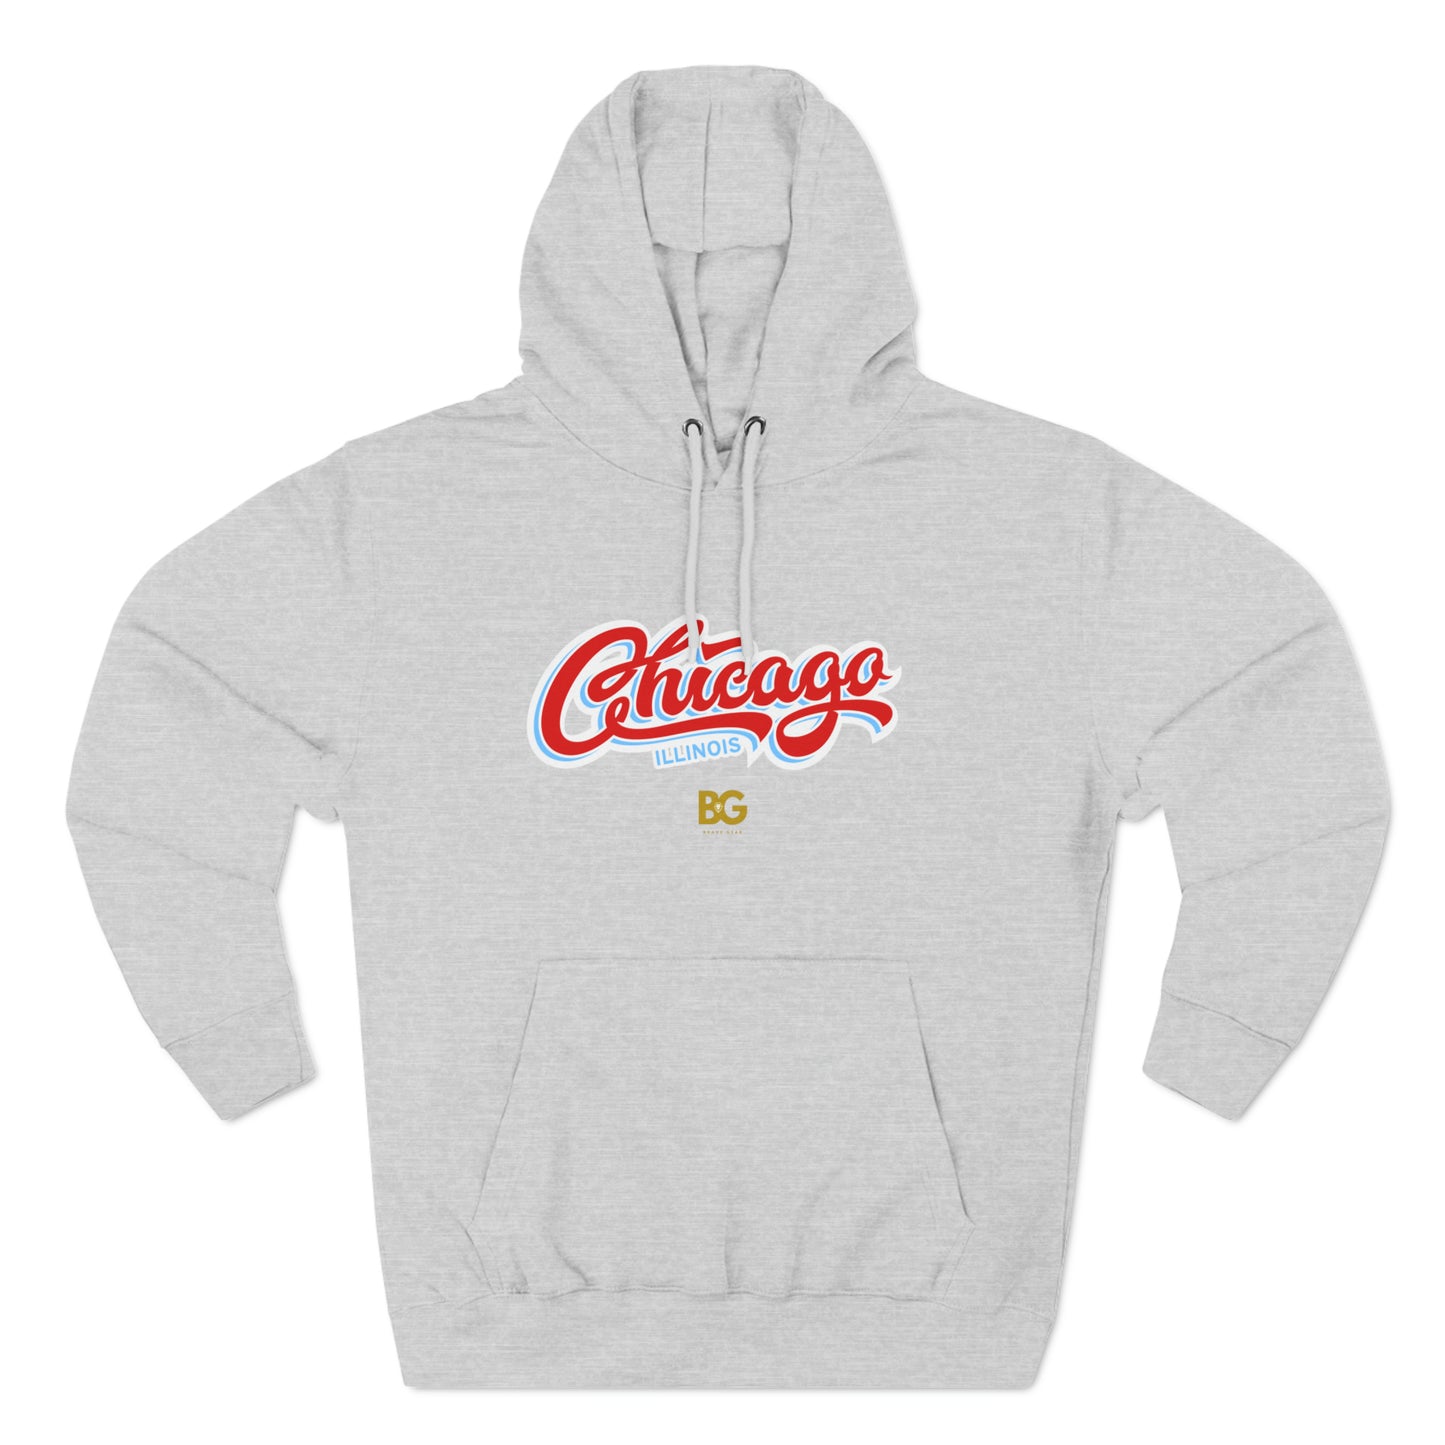 BG "Chicago" Premium Pullover Hoodie